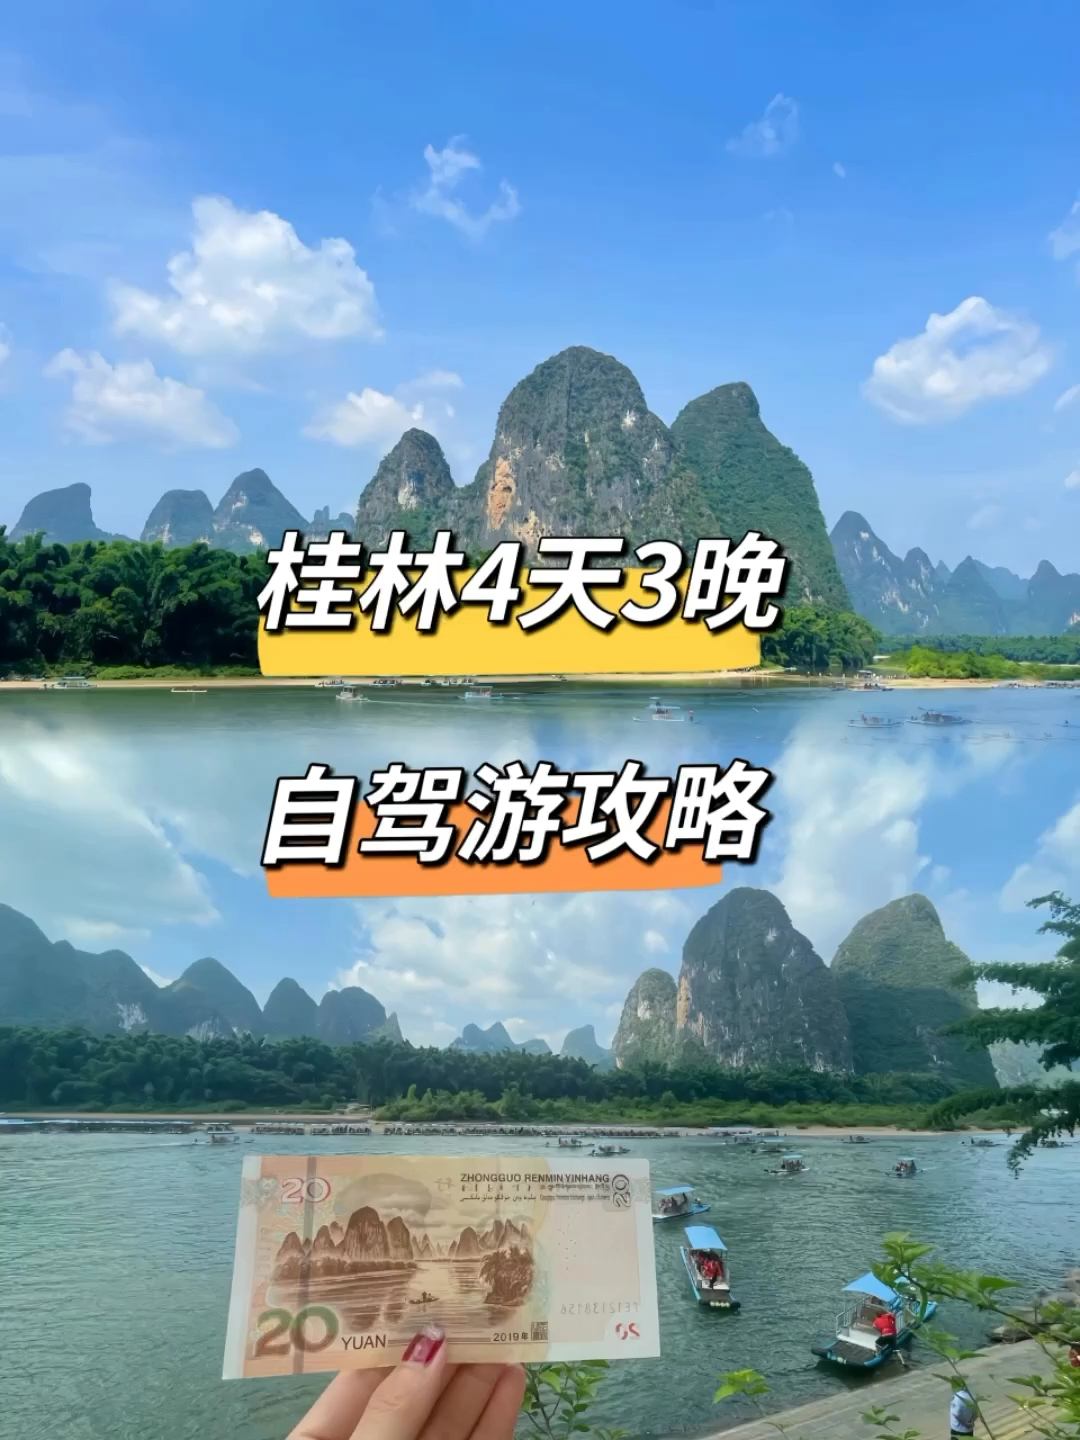 🌈桂林4天3晚自驾游攻略🔥看这篇视频就可以了✨ #桂林旅游攻略 #桂林旅游